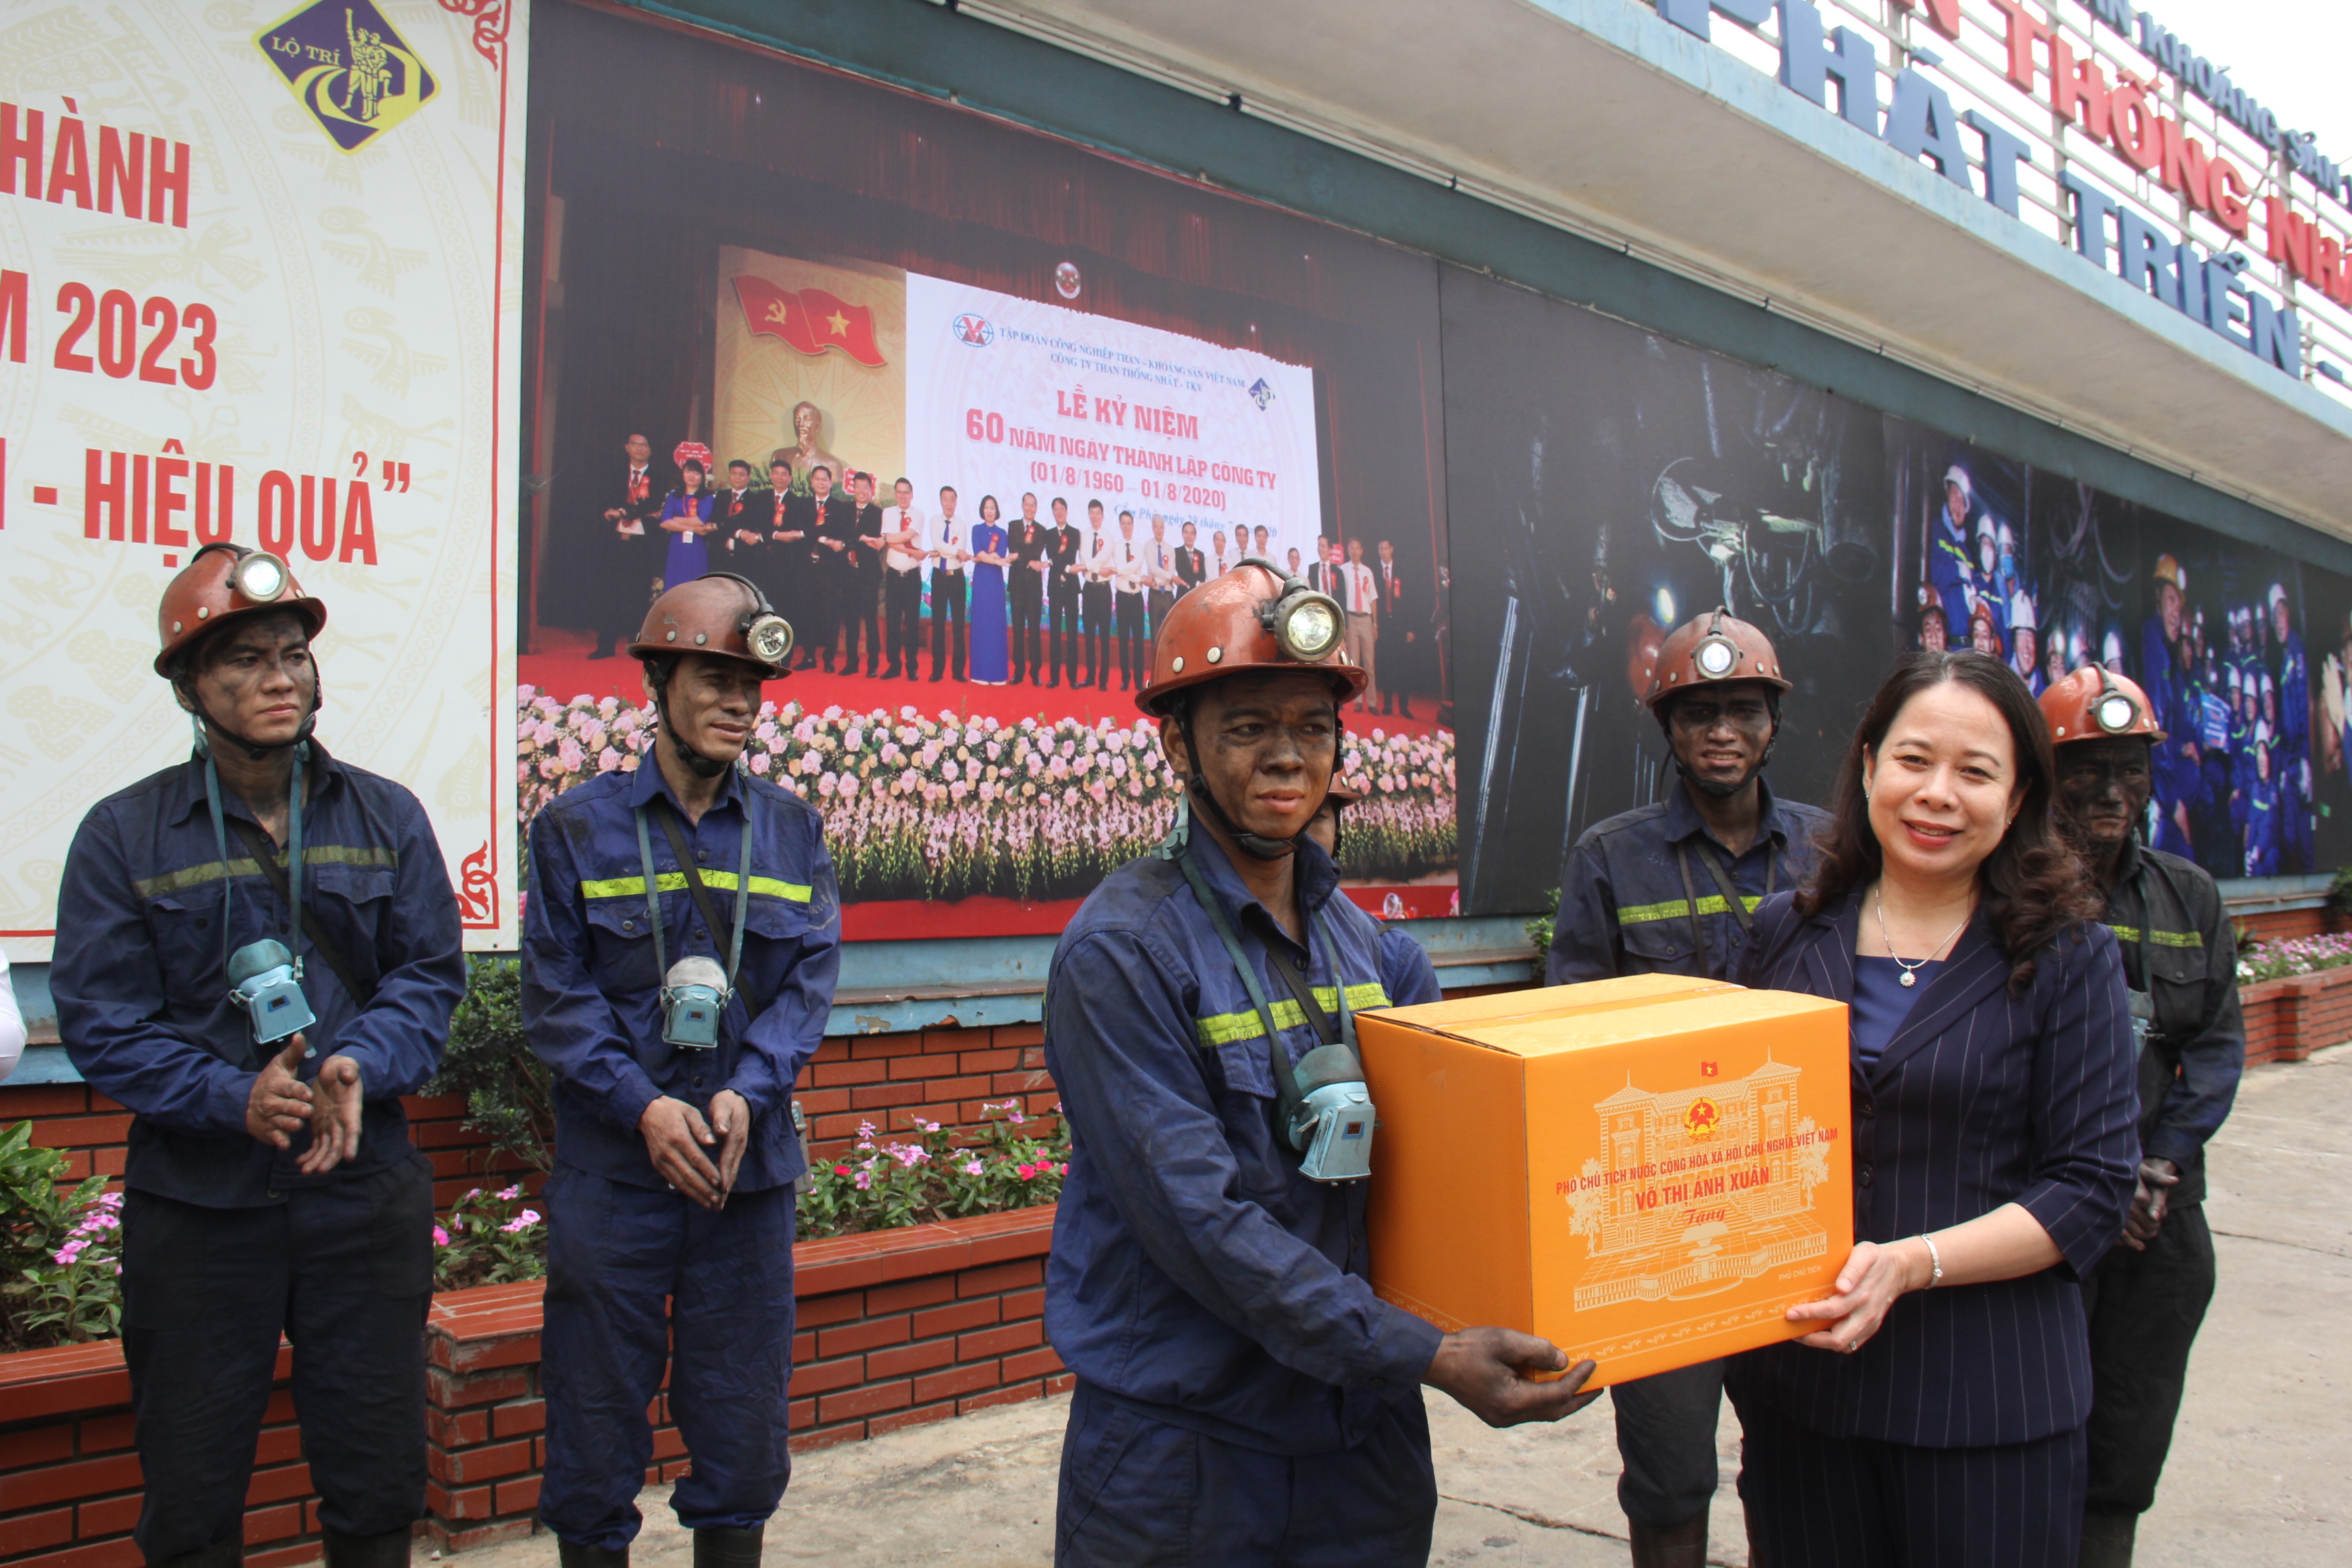 Đội ngũ công nhân lao động ngành Than có vai trò và đóng góp quan trọng đối với sự phát triển kinh tế - xã hội của tỉnh Quảng Ninh và đất nước - Ảnh 9